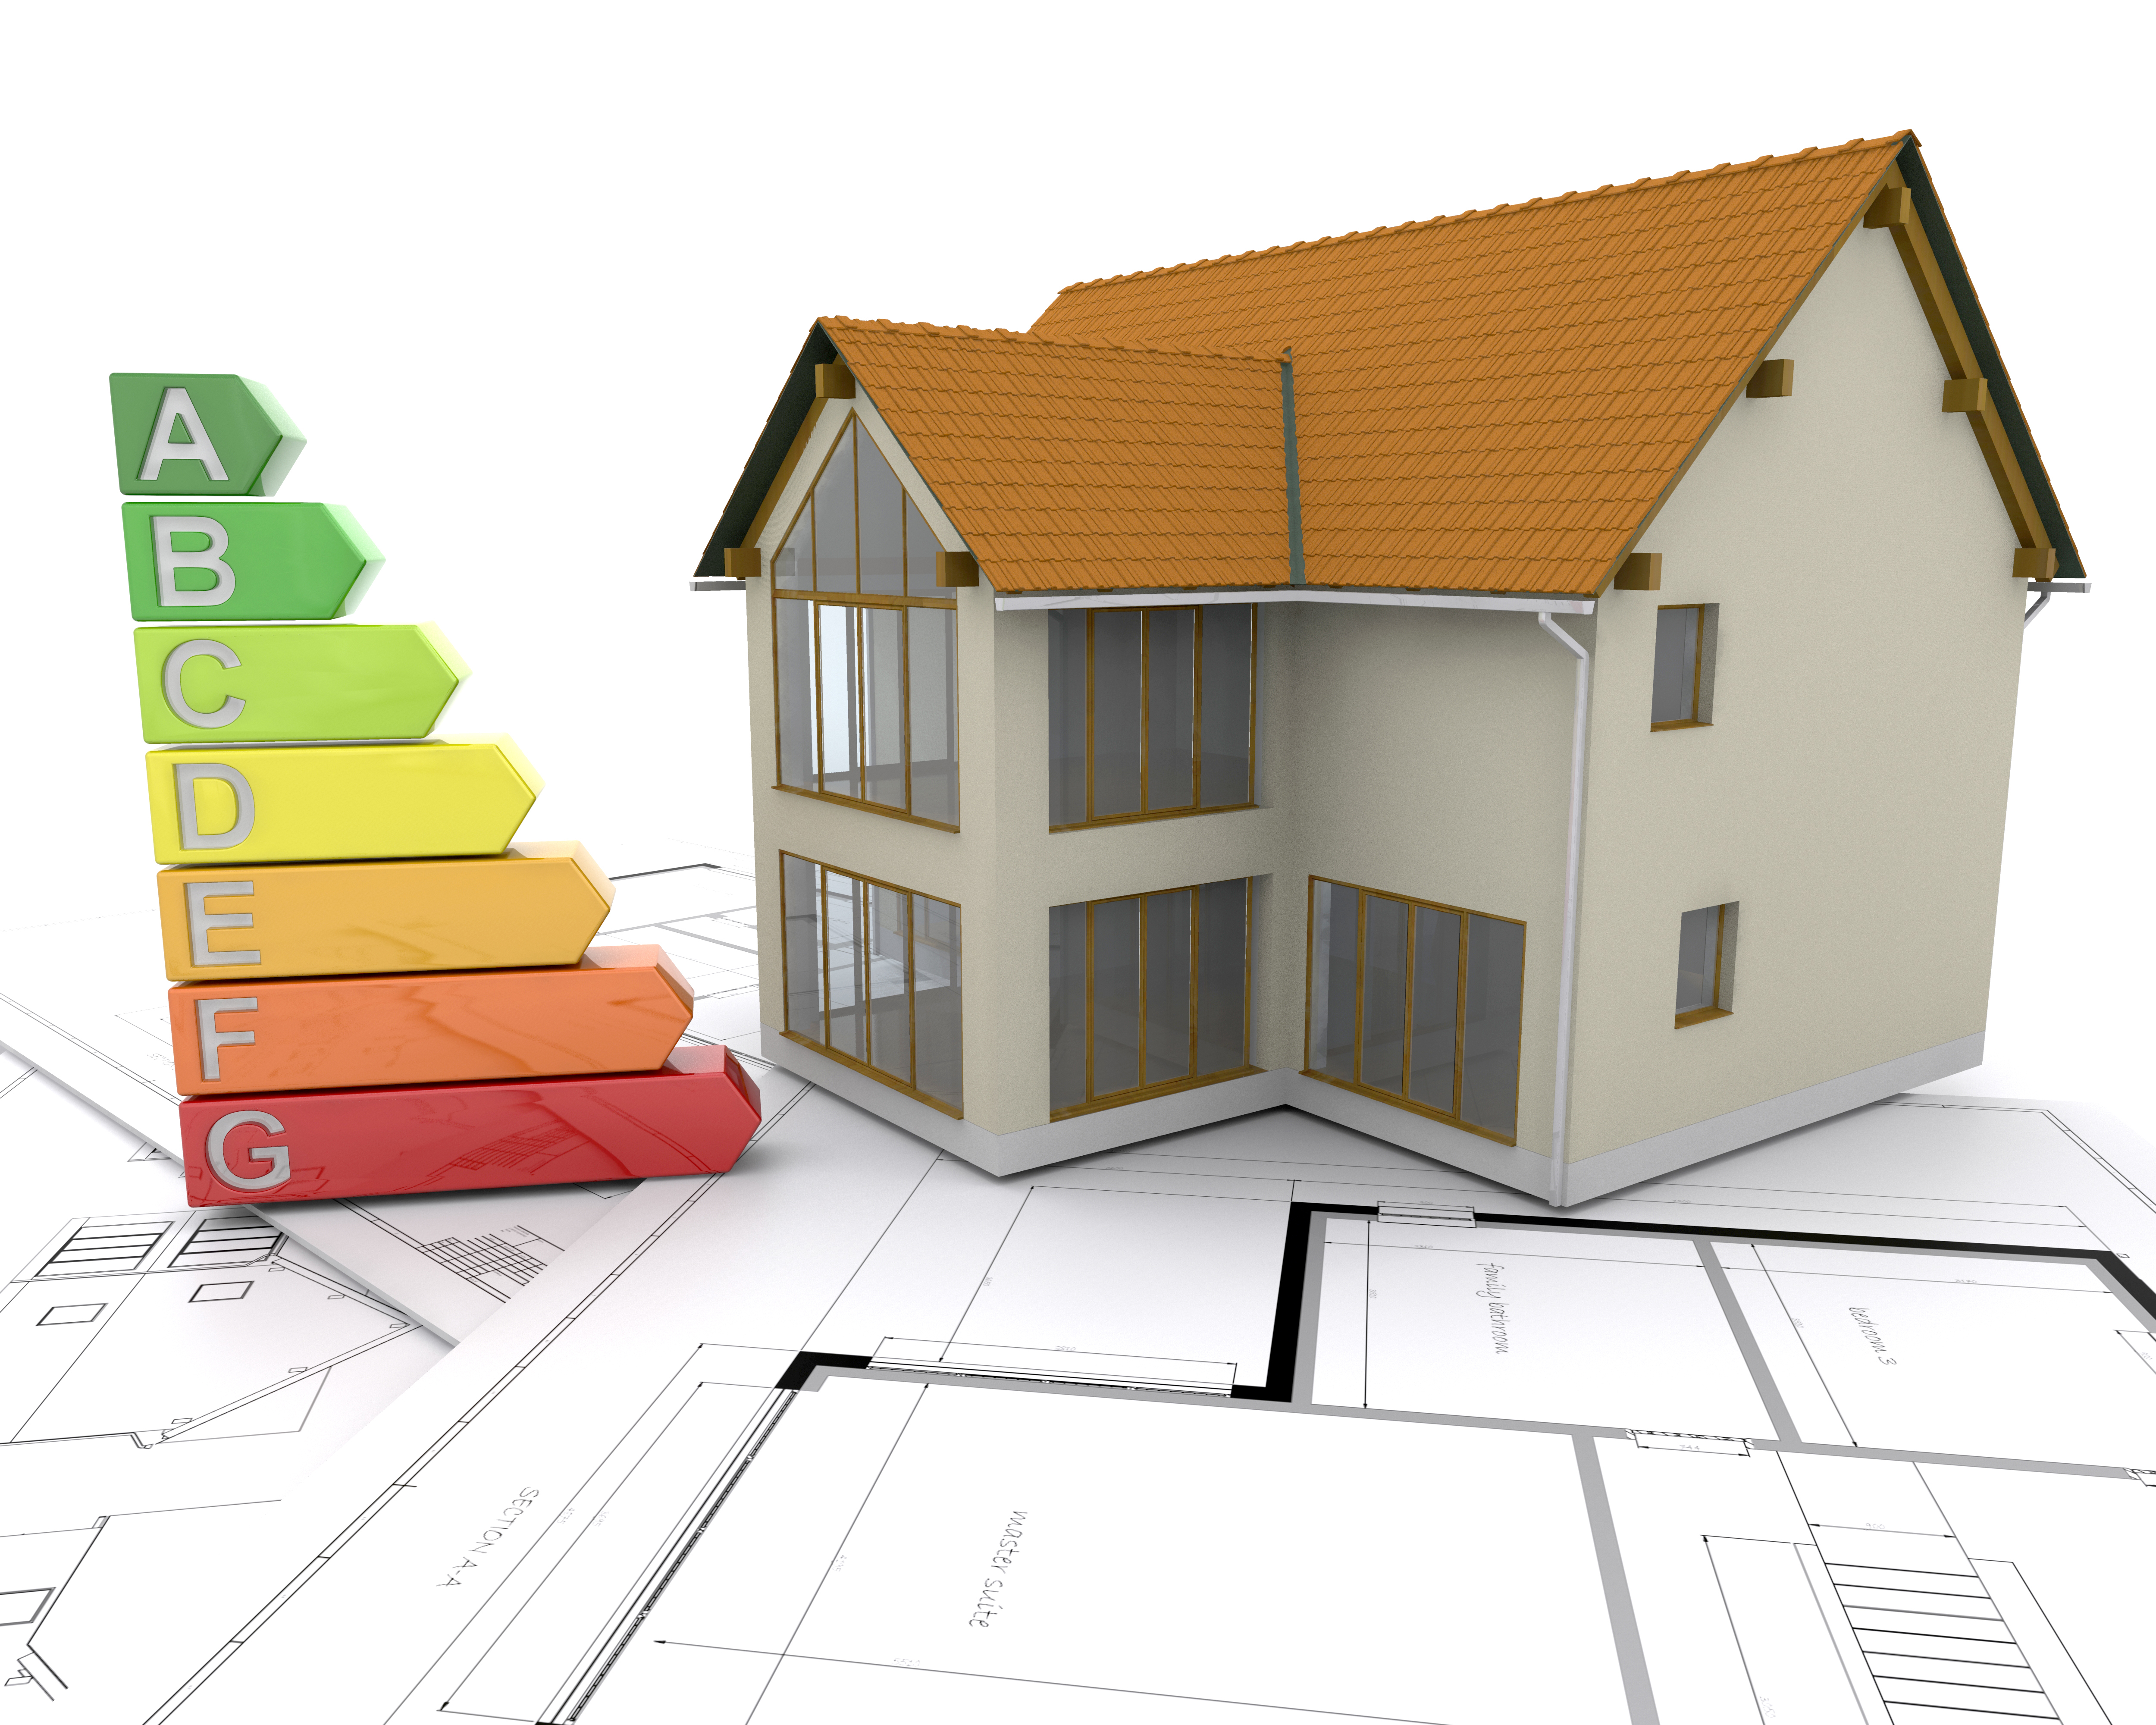 Une maquette de maison se tient sur des plans architecturaux avec une échelle d'efficacité énergétique allant de A à G, symbolisant l'importance de la construction durable.